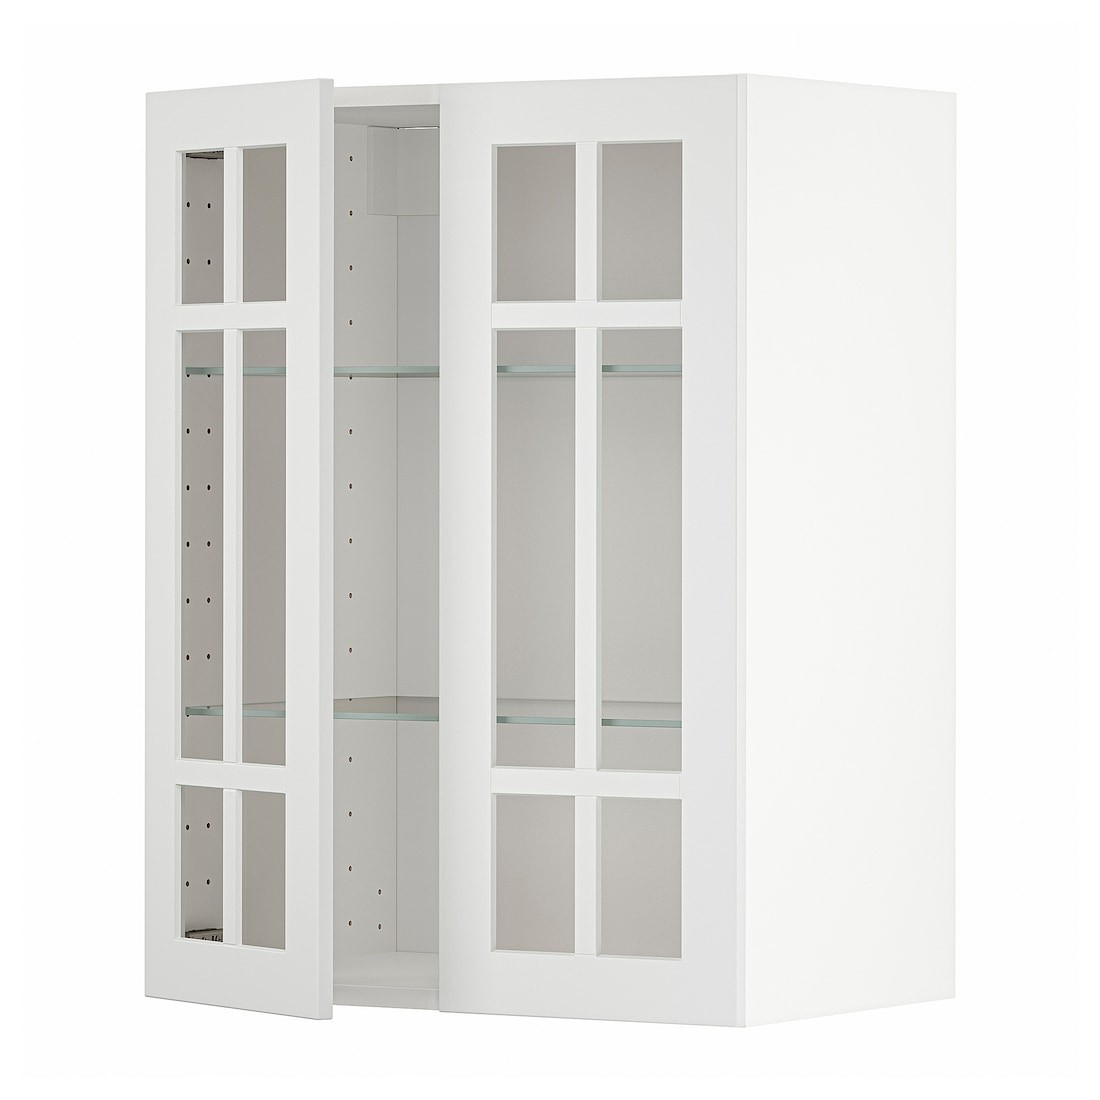 METOD МЕТОД Навесной шкаф, белый / Stensund белый, 60x80 см